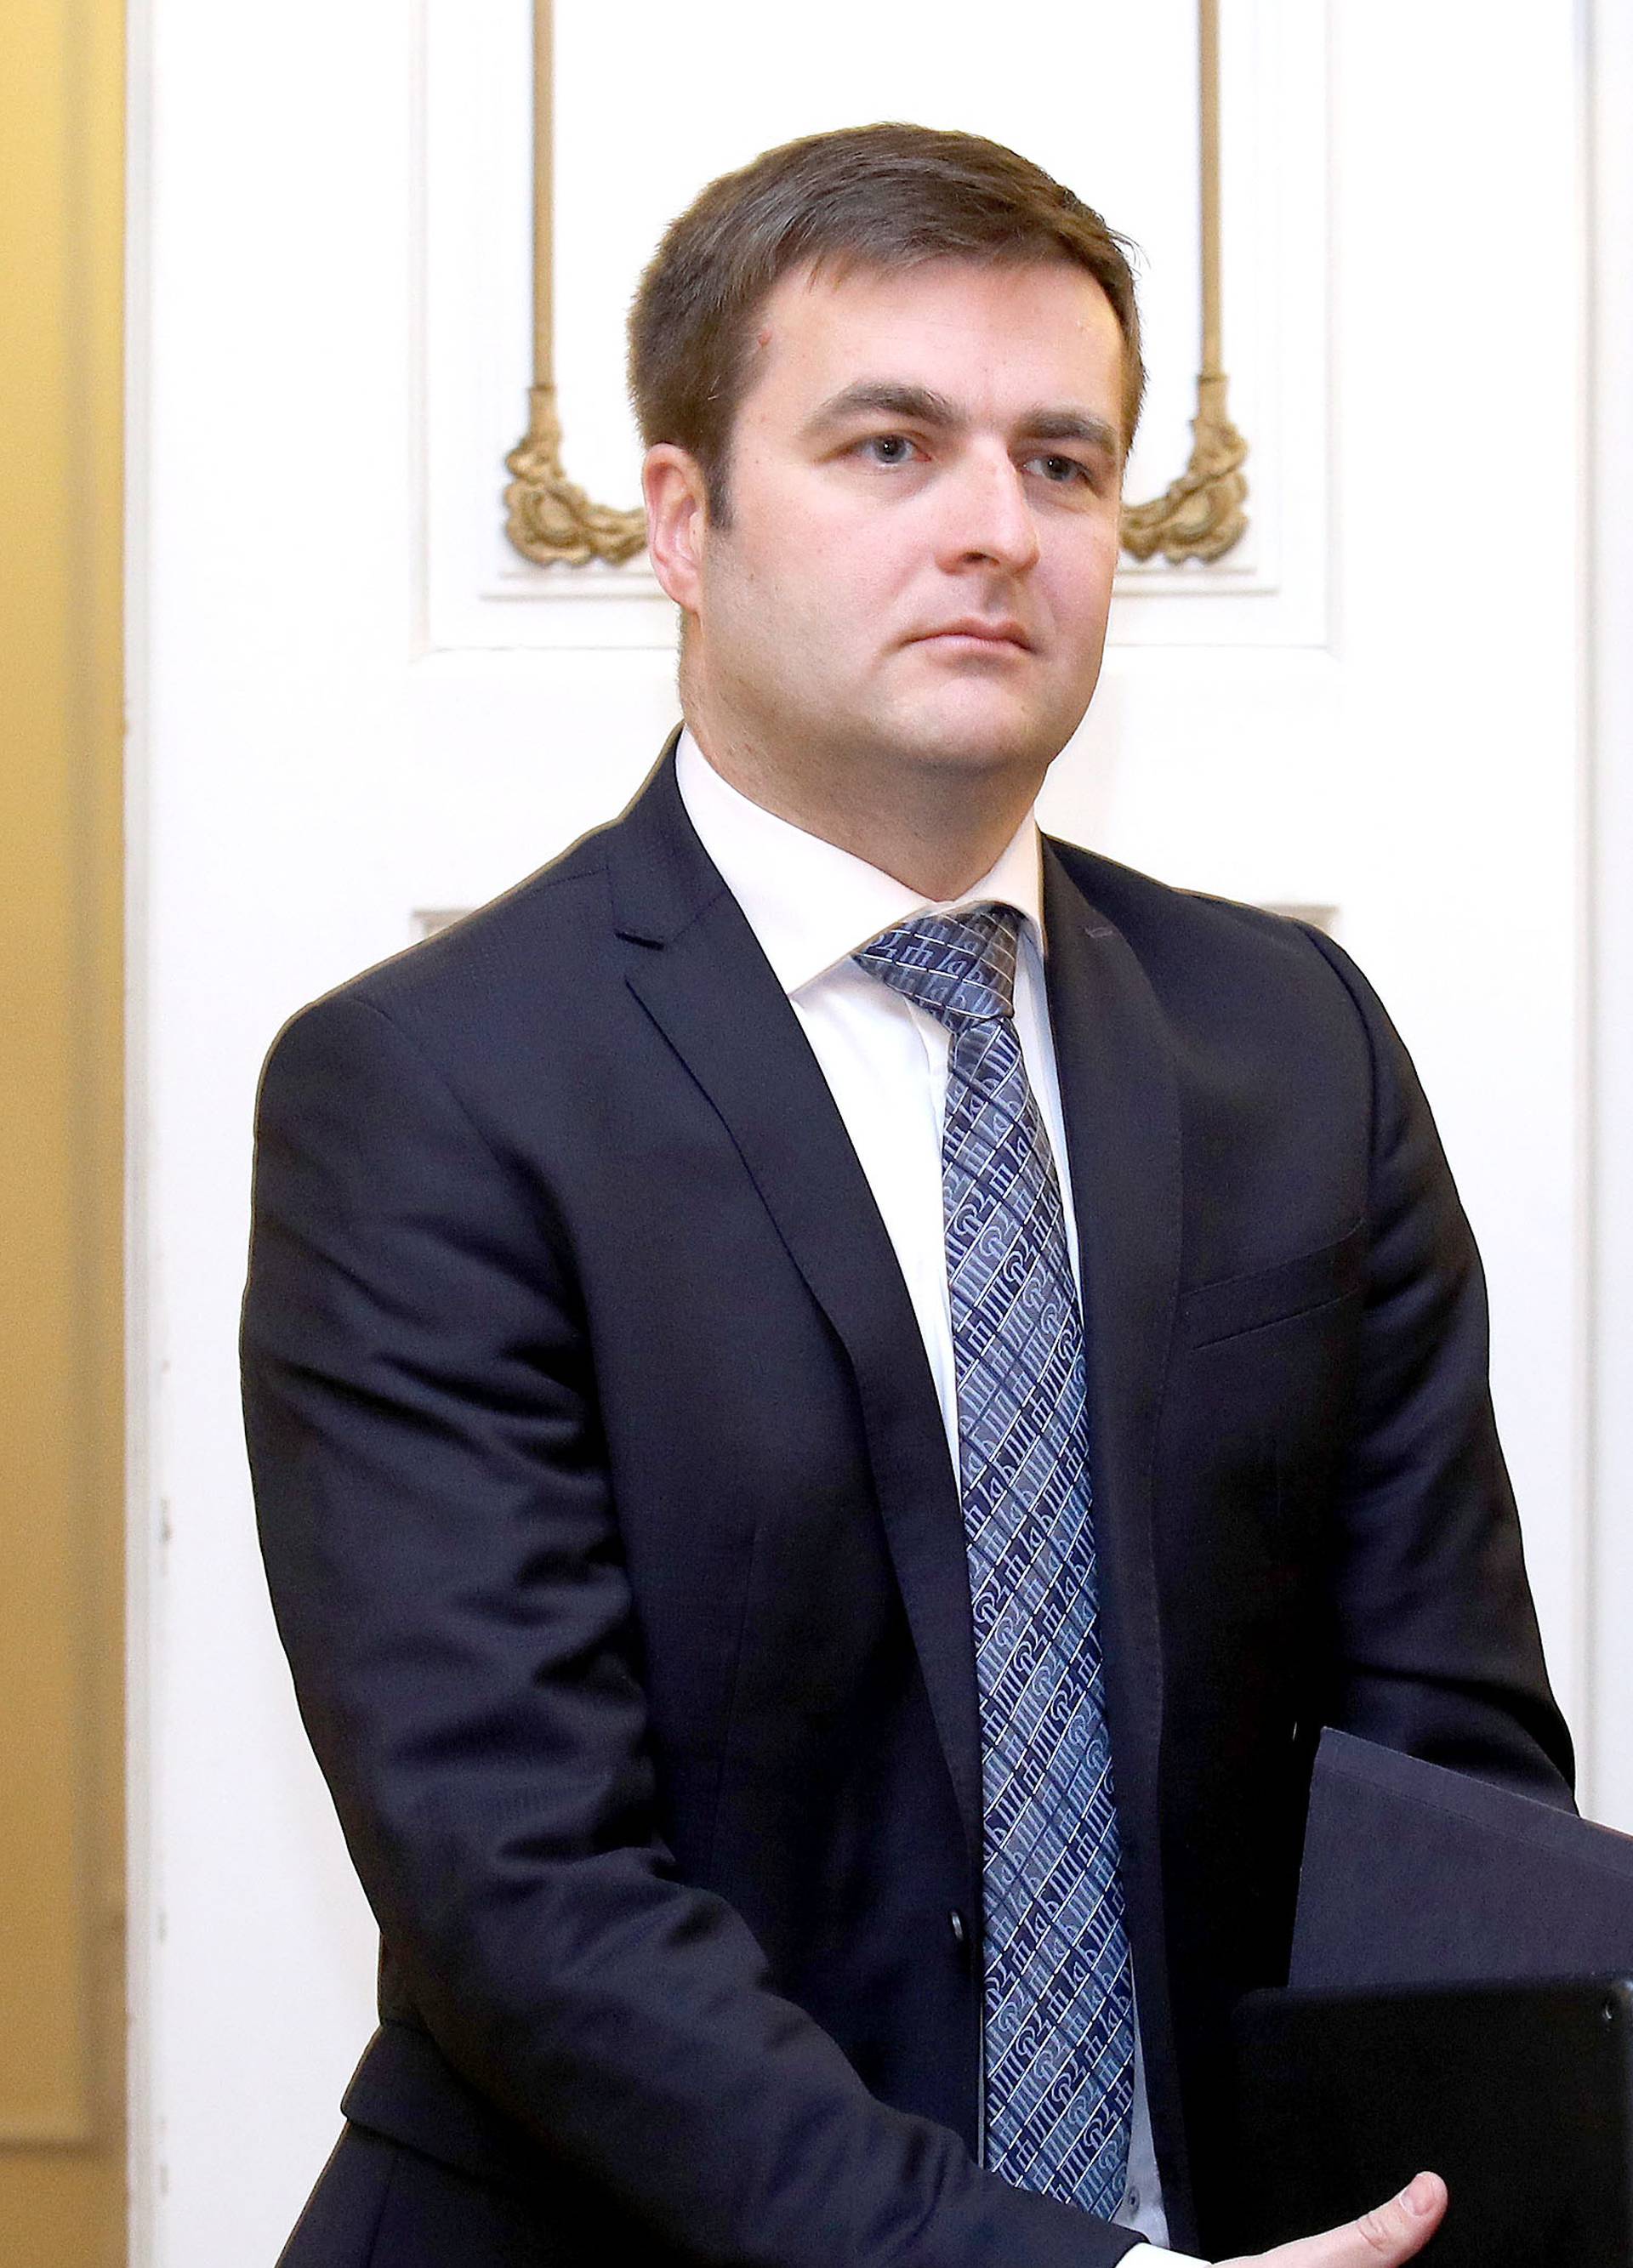 Ministar Ćorić: Zapošljavanje svake osobe velika je pobjeda